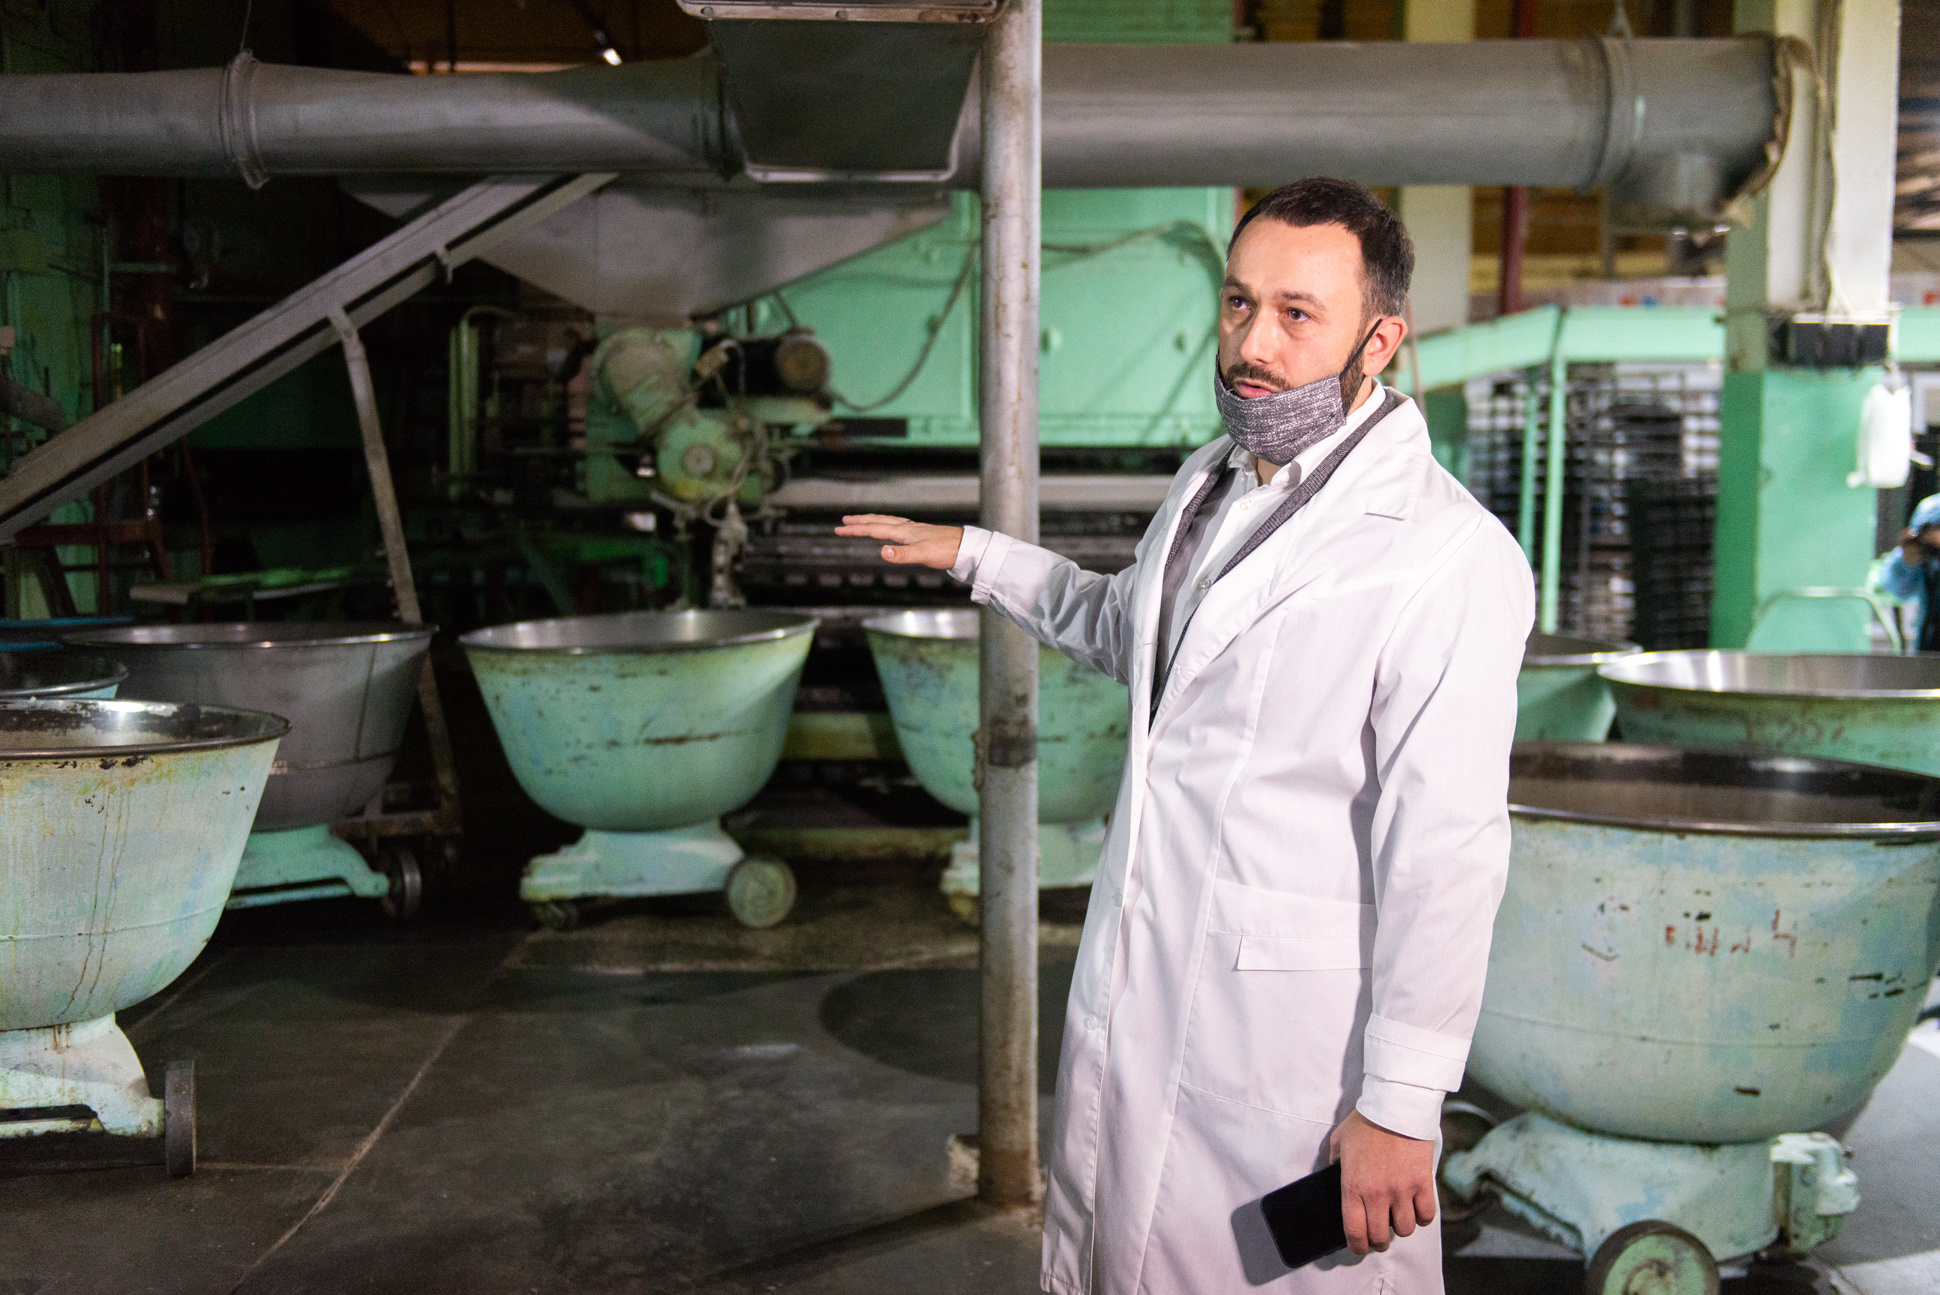 Виталий Жук по образованию психолог. В 2014 году стал одним из руководителей завода по изготовлению предизолированных труб. Осенью 2021 года занялся восстановлением Верхнесалдинского хлебокомбината.